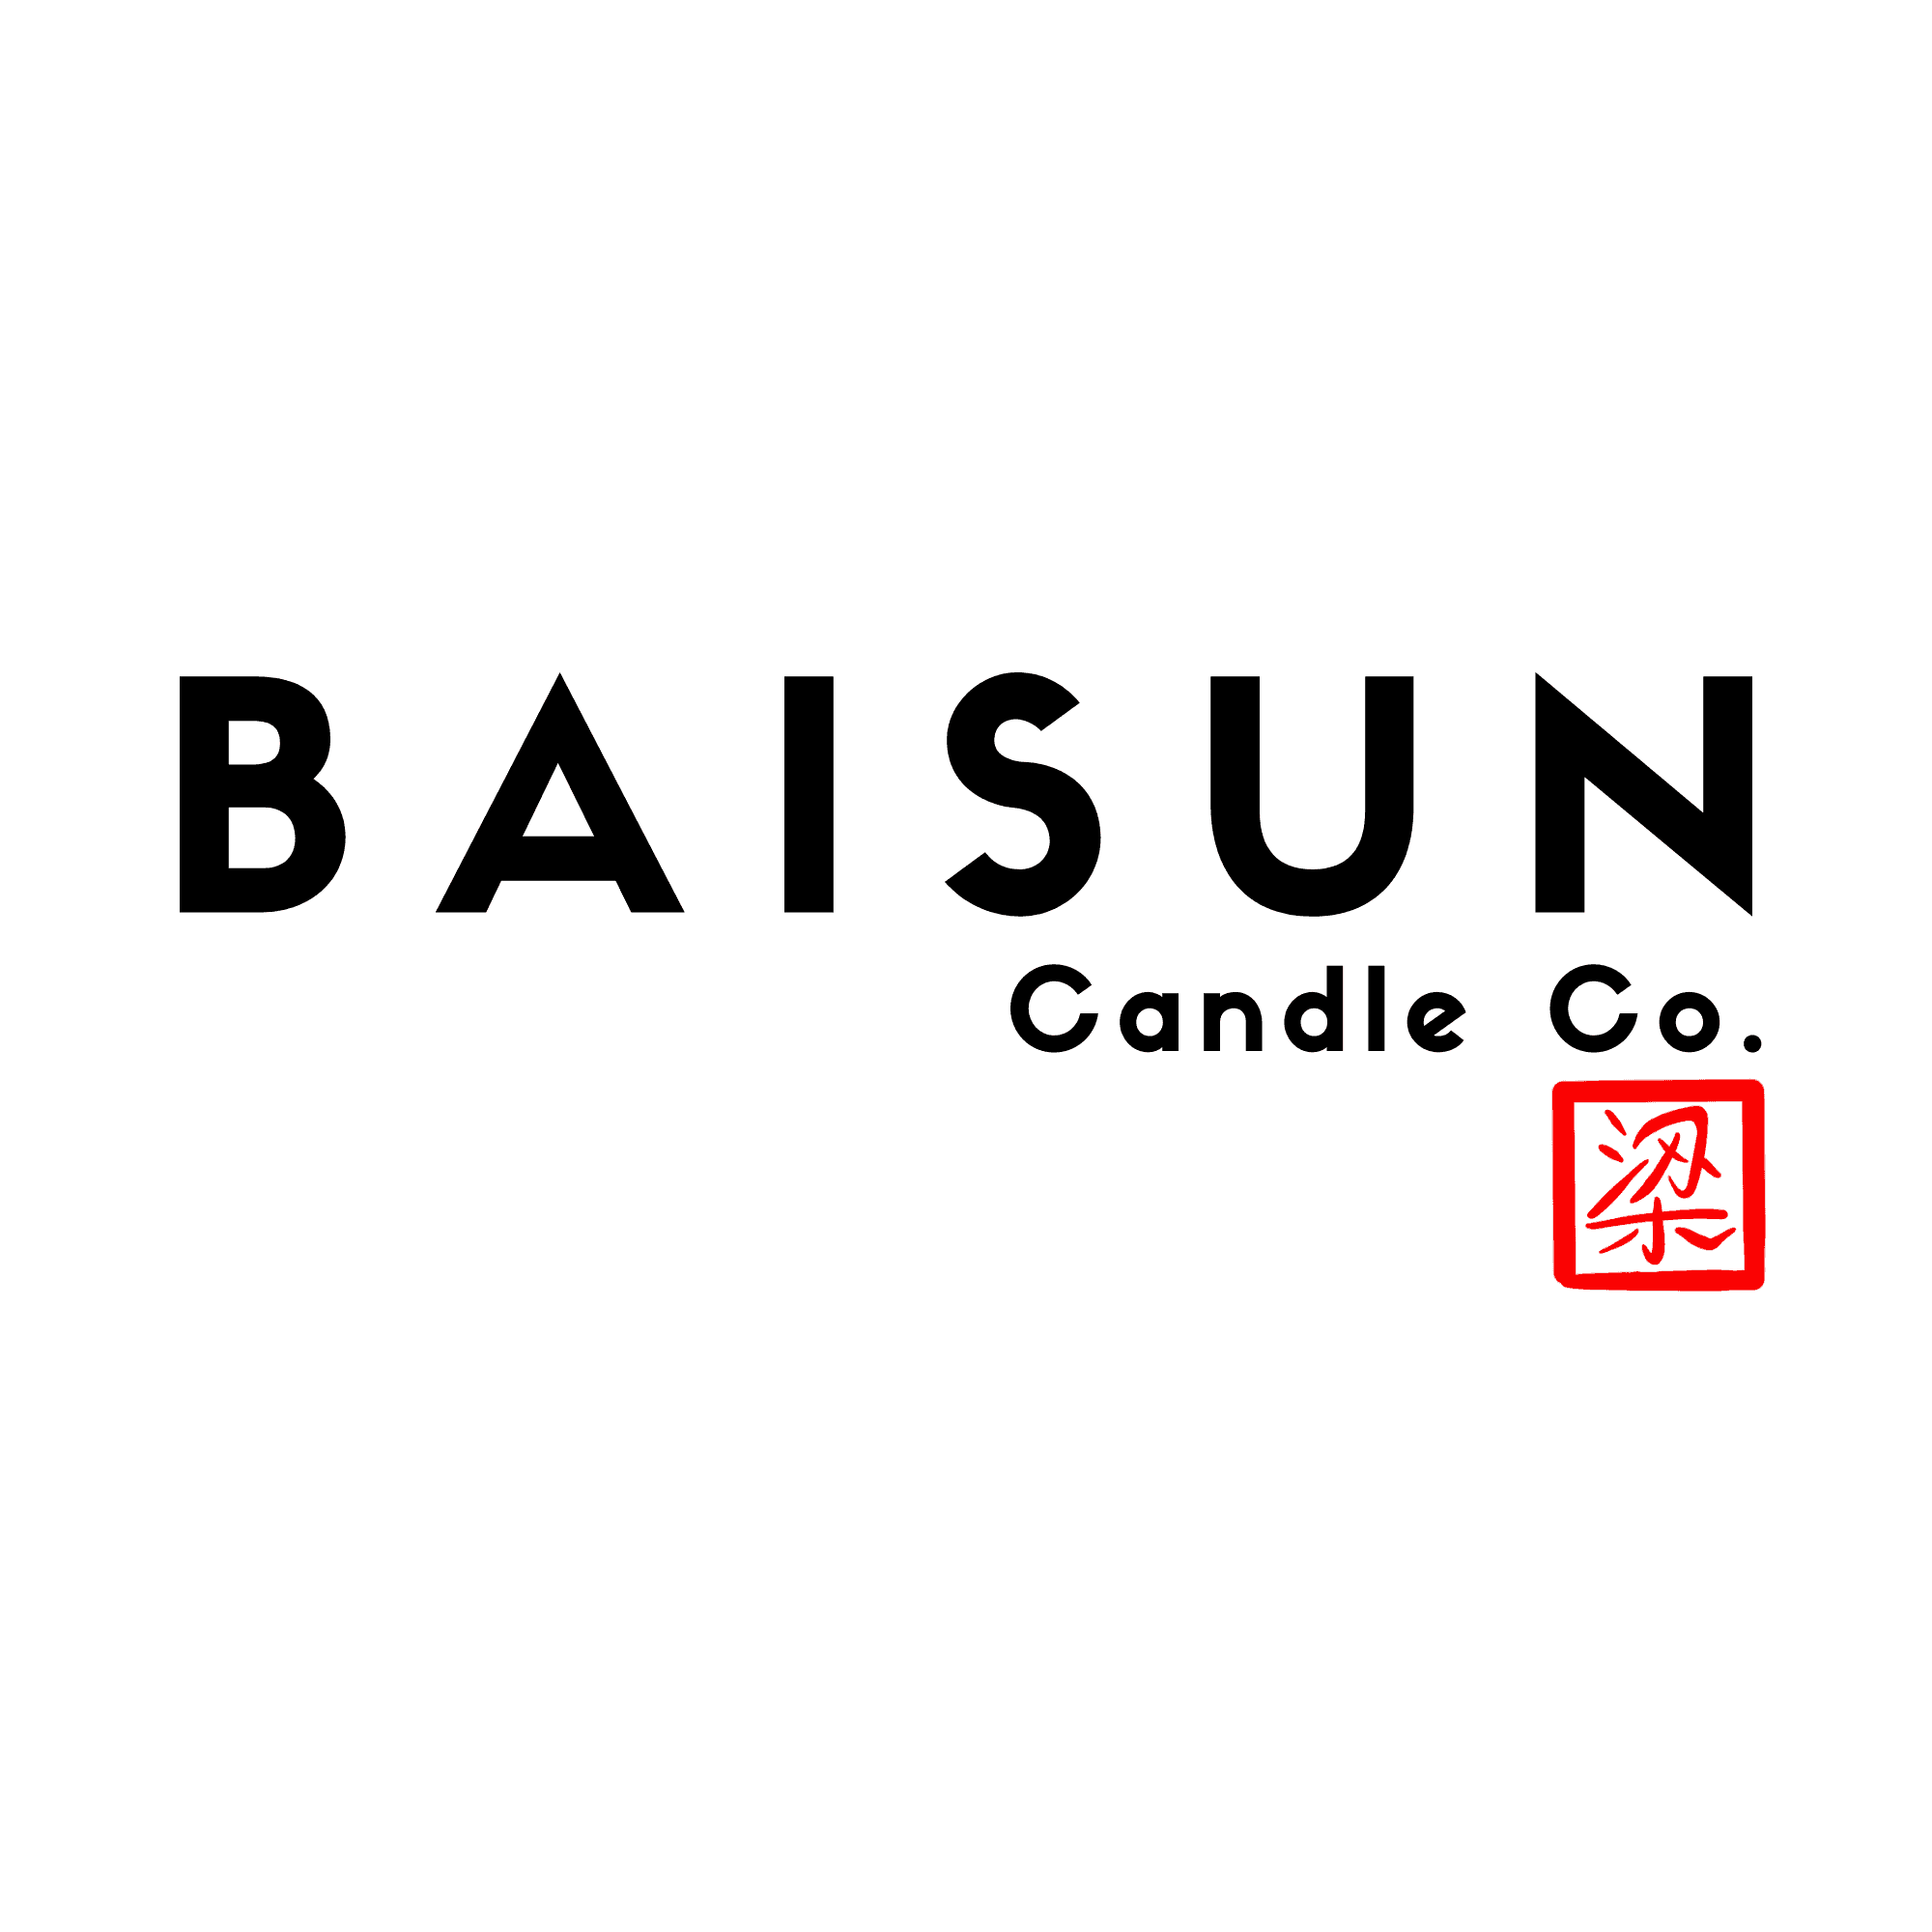 Baisun Candle Co.